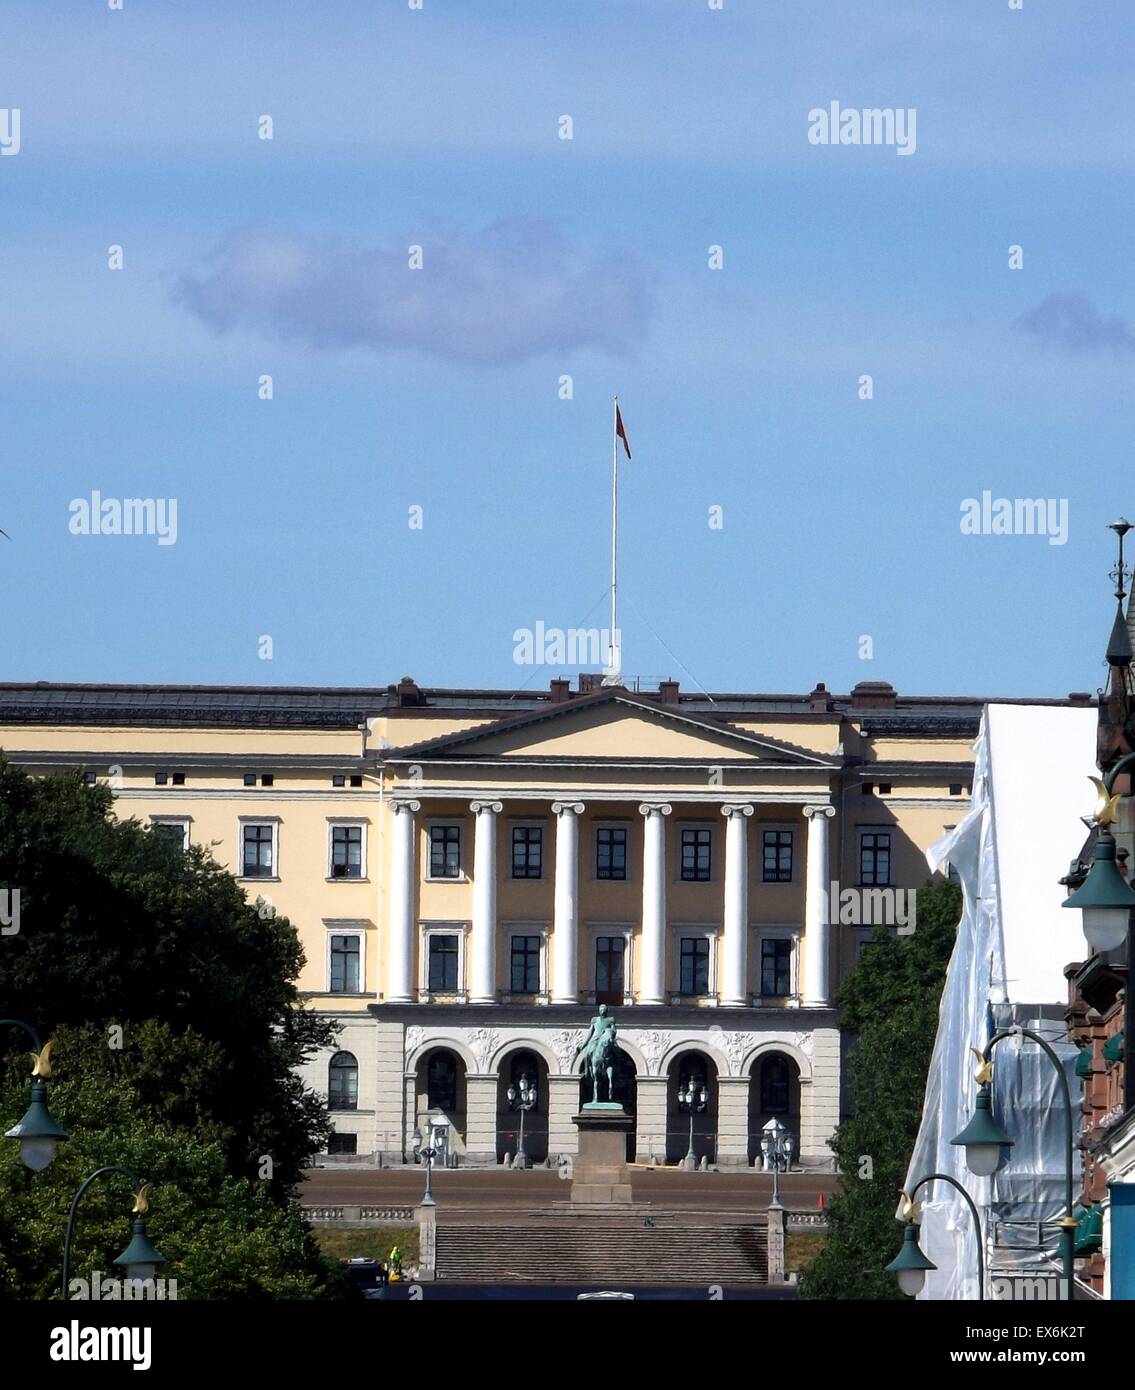 Il Royal Palace (Slottet o formalmente norvegese: Det Kongelige slott) in Oslo fu costruita nella prima metà del XIX secolo Foto Stock